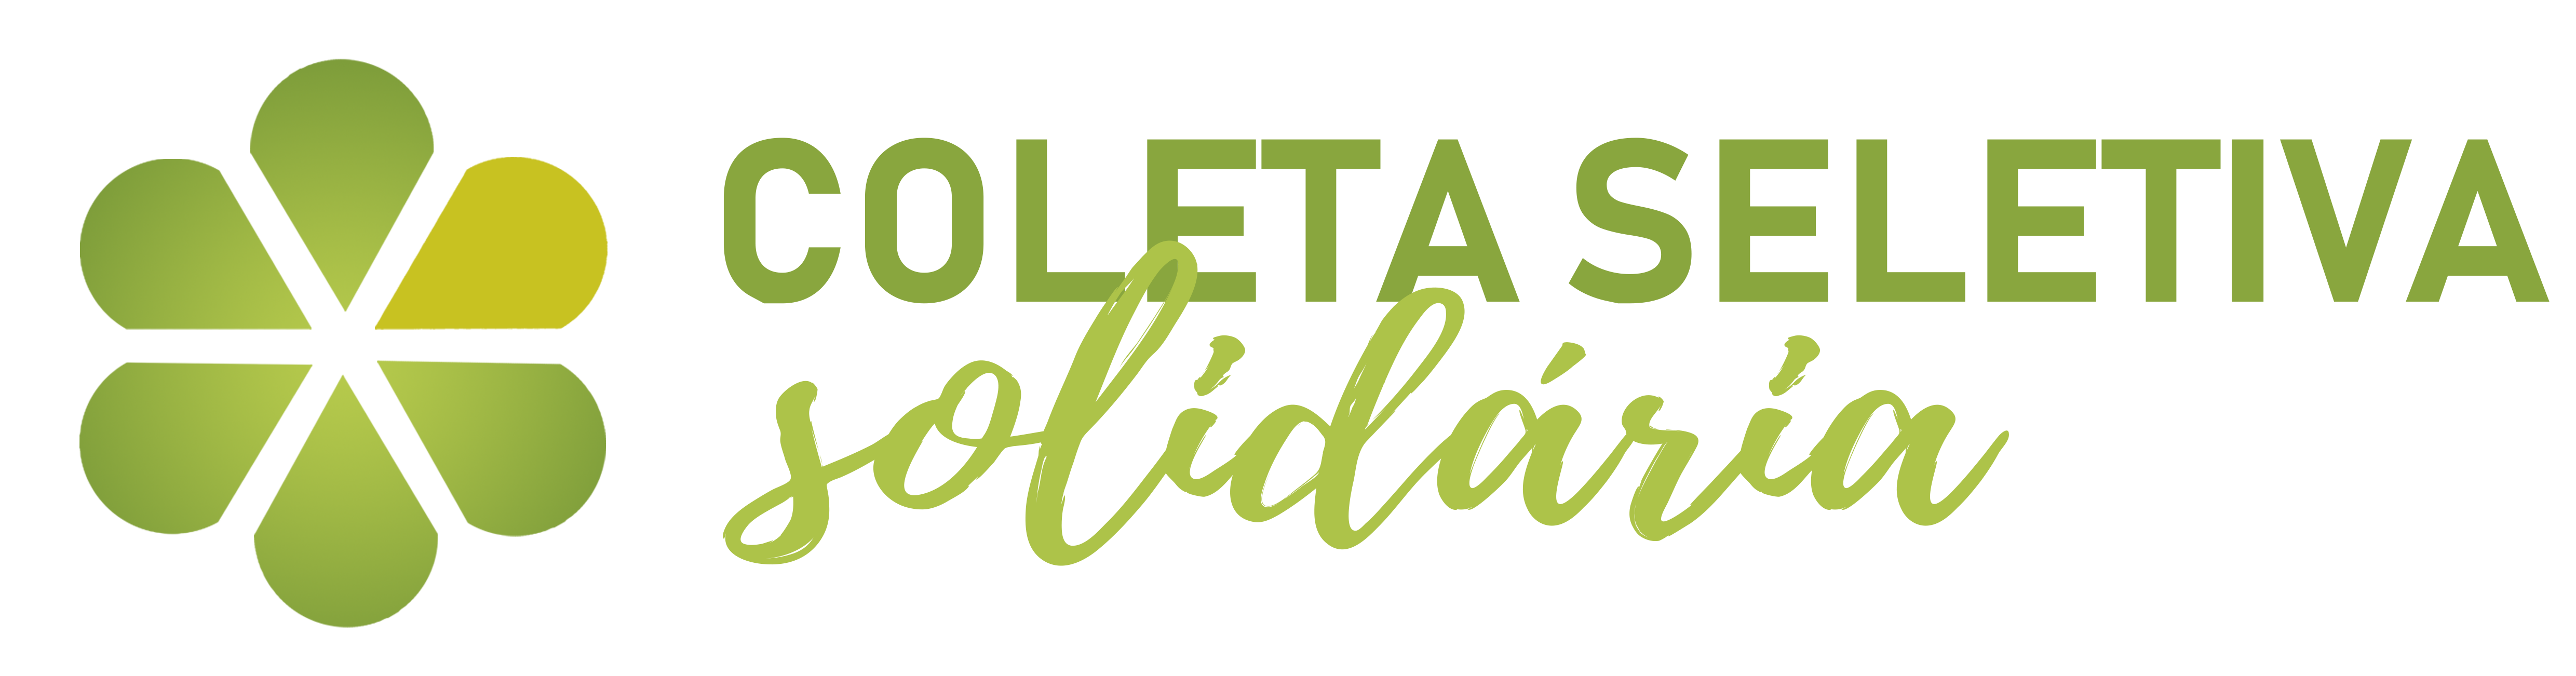 Logotipo da Comissão de Coleta Seletiva Solidária da Universidade Federal de Juiz de Fora, Campus Governador Valadares